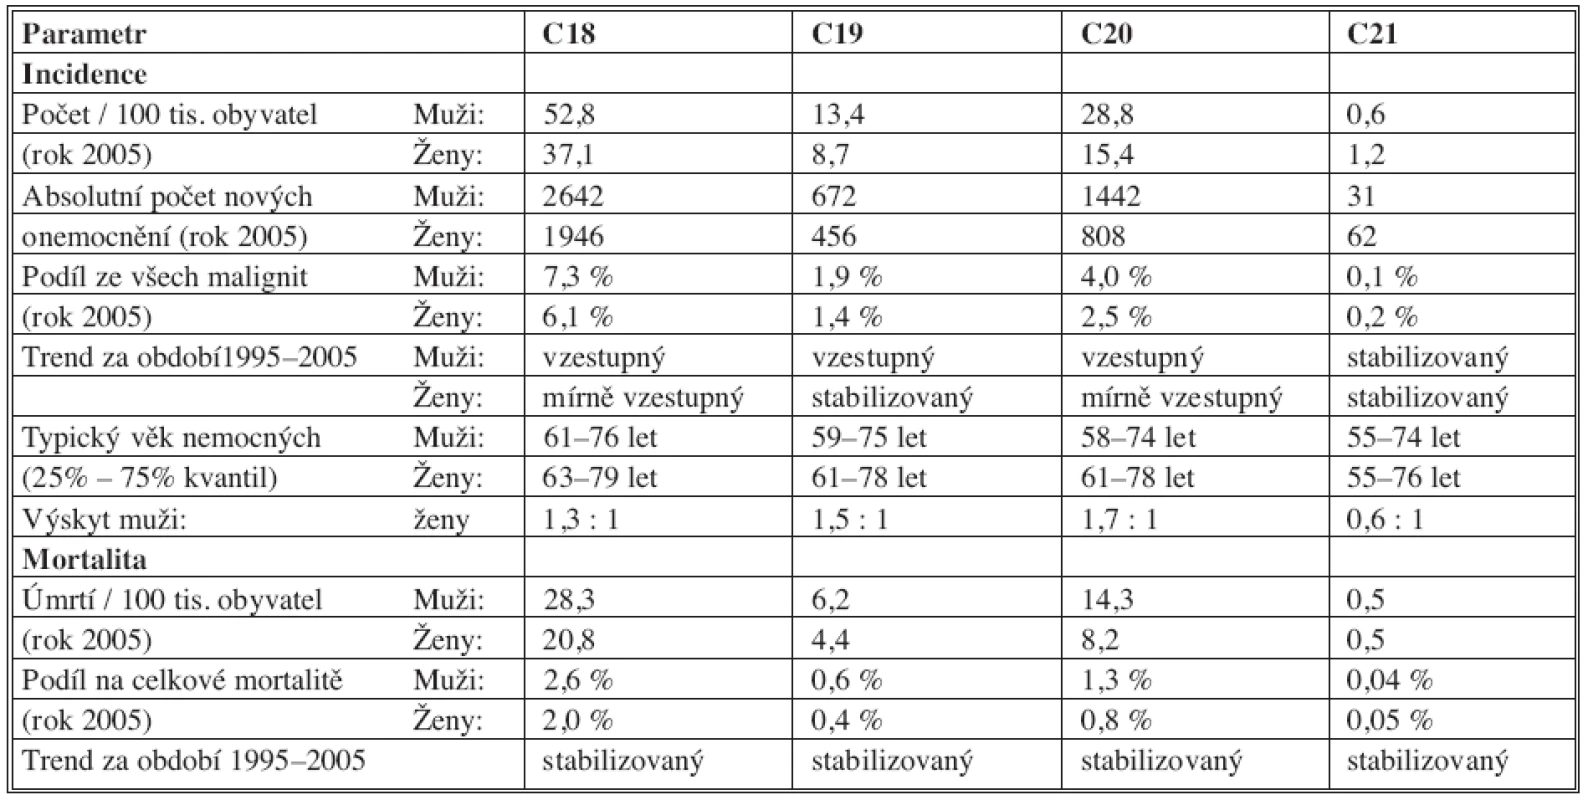 Základní epidemiologické charakteristiky nádorů CRC v ČR
Tab. 1. Basic epidemiological characteristics of CRC tumors in the Czech Republic